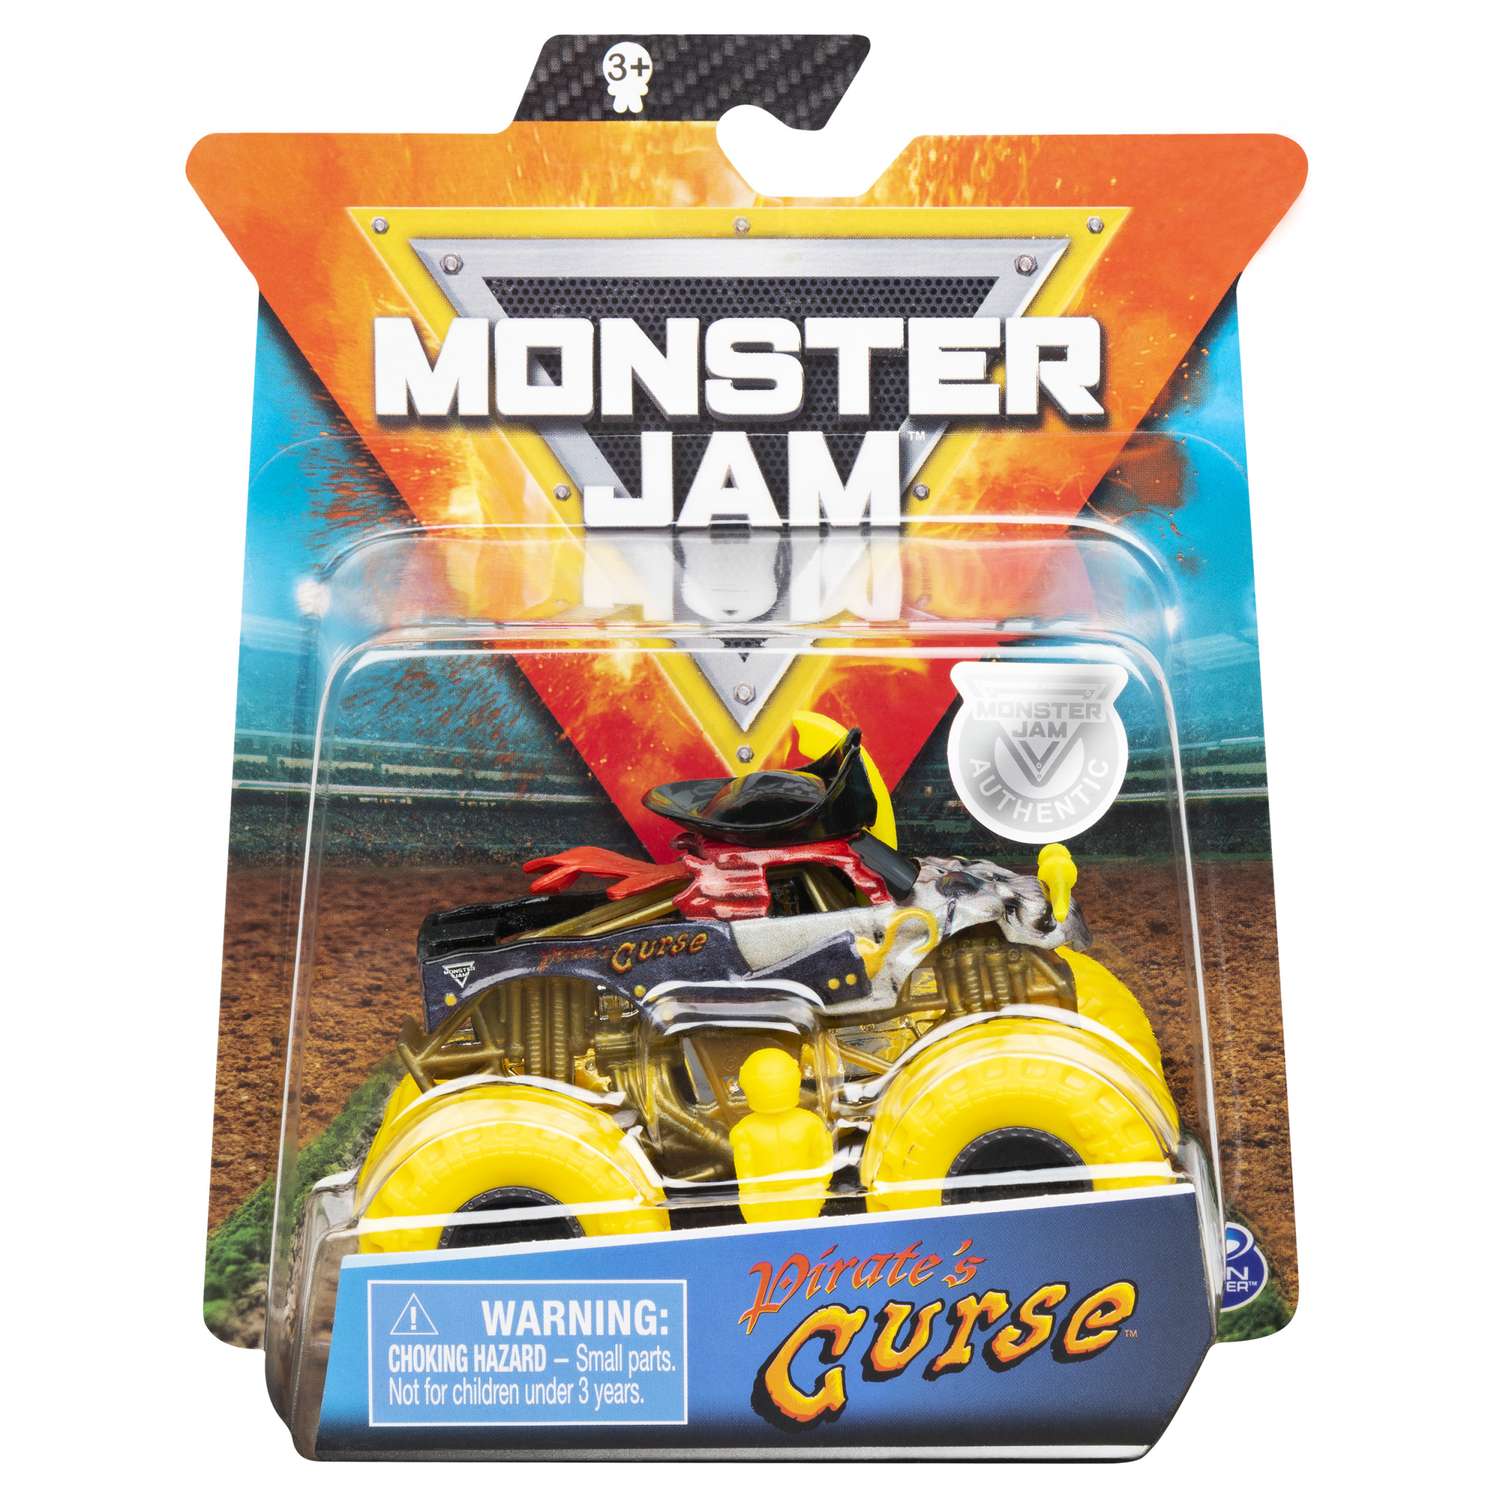 Машинка Monster Jam 1:64 Pirates Curse Neon 6044941/20116897 6044941 - фото 2